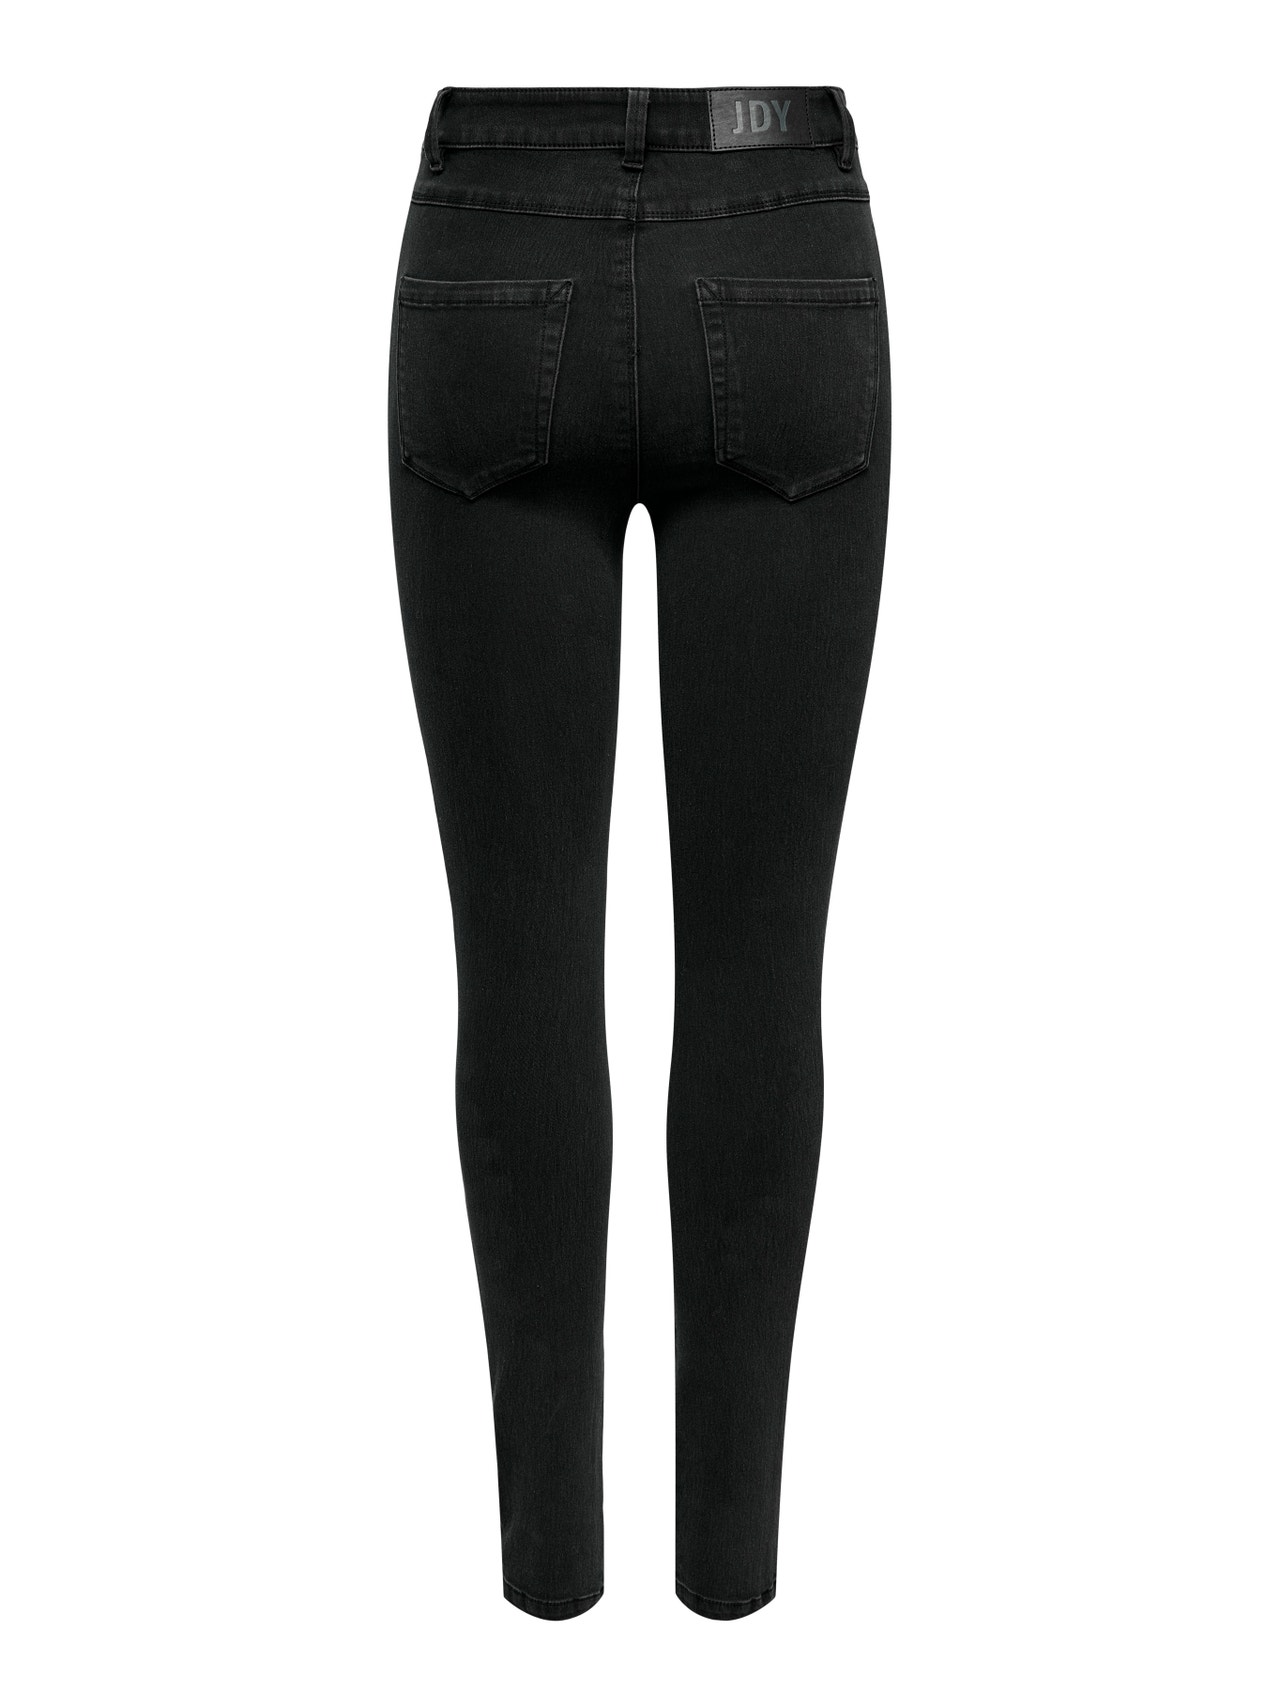 ONLY Skinny Fit Jeans -Black Denim - 15271679